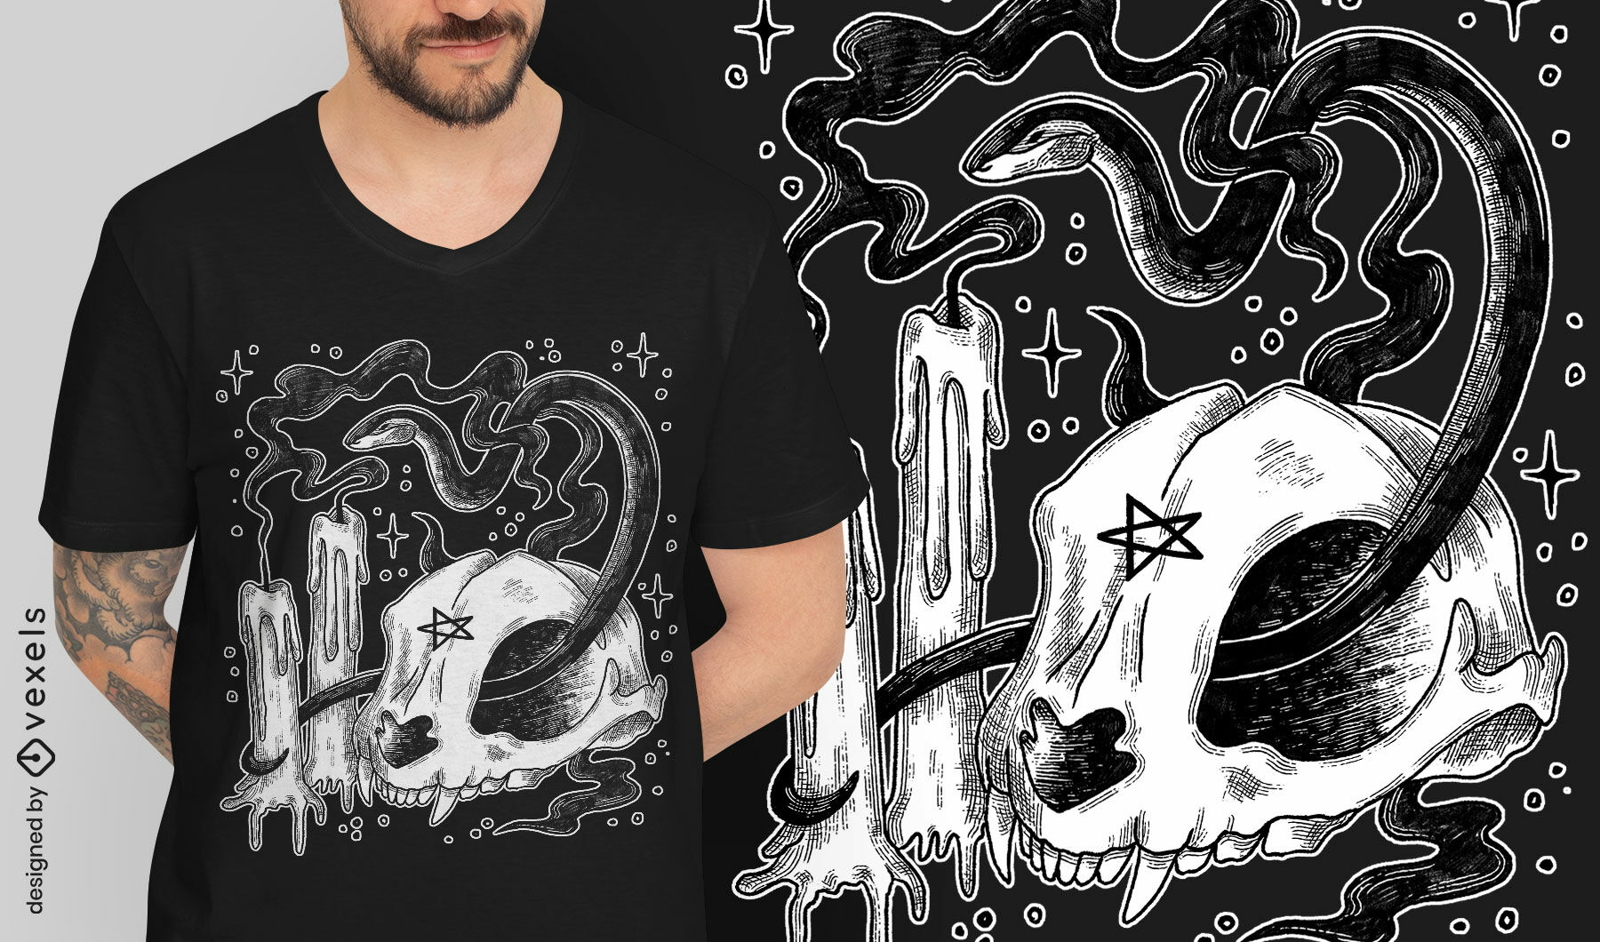 Pentagram skull and snake t-shirt design